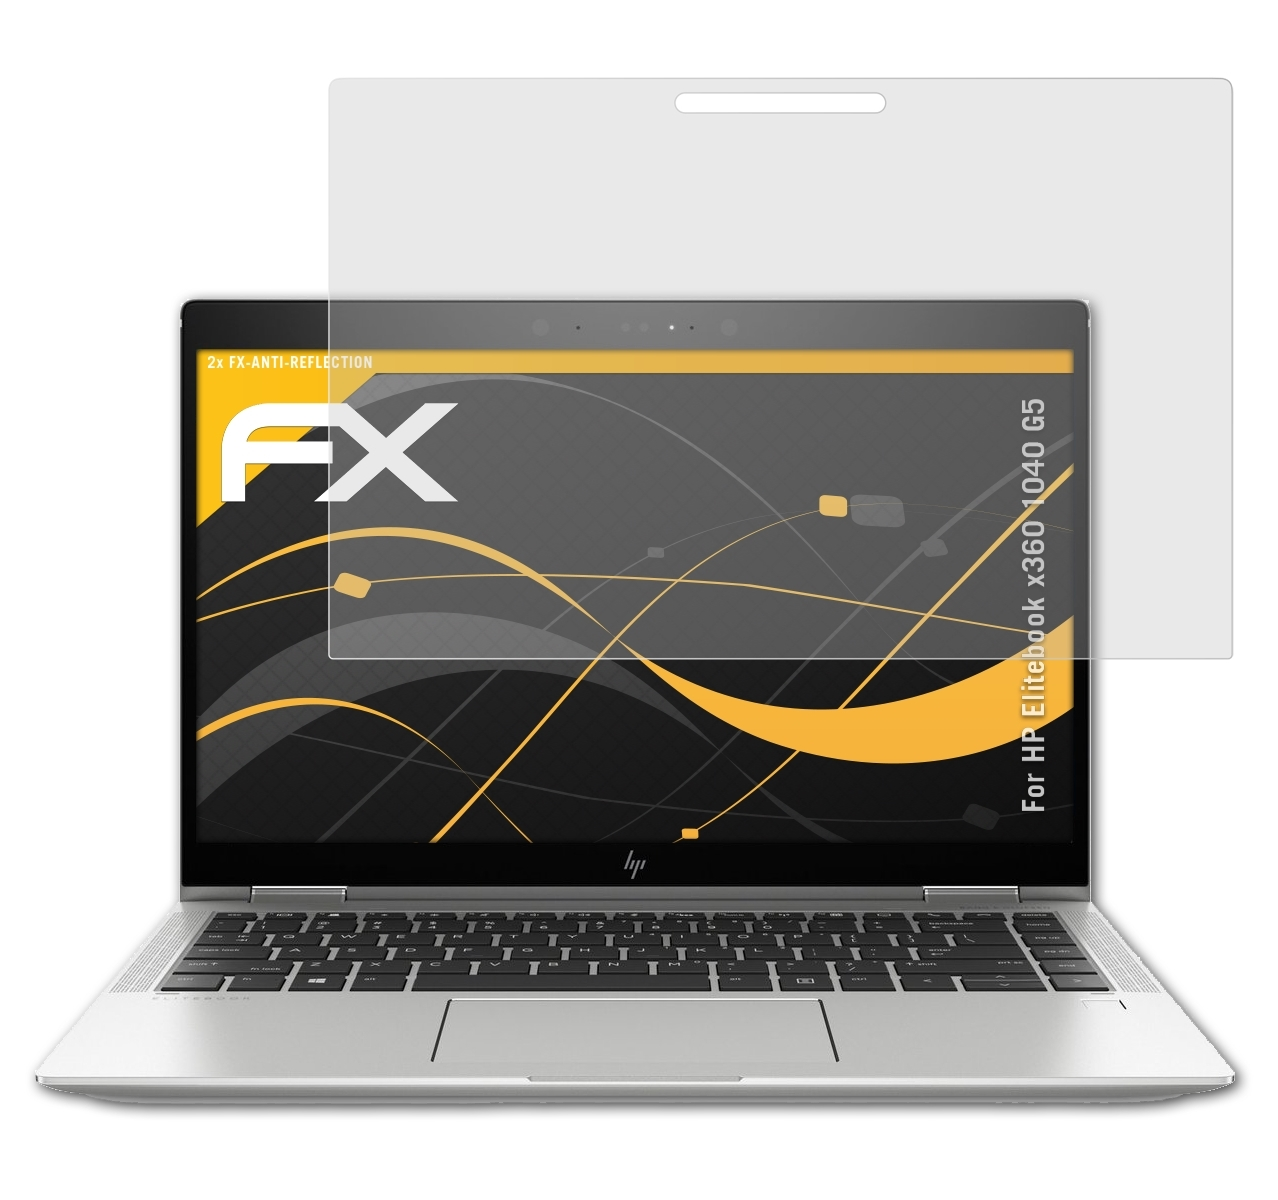 ATFOLIX Elitebook 1040 FX-Antireflex 2x Displayschutz(für HP x360 G5)